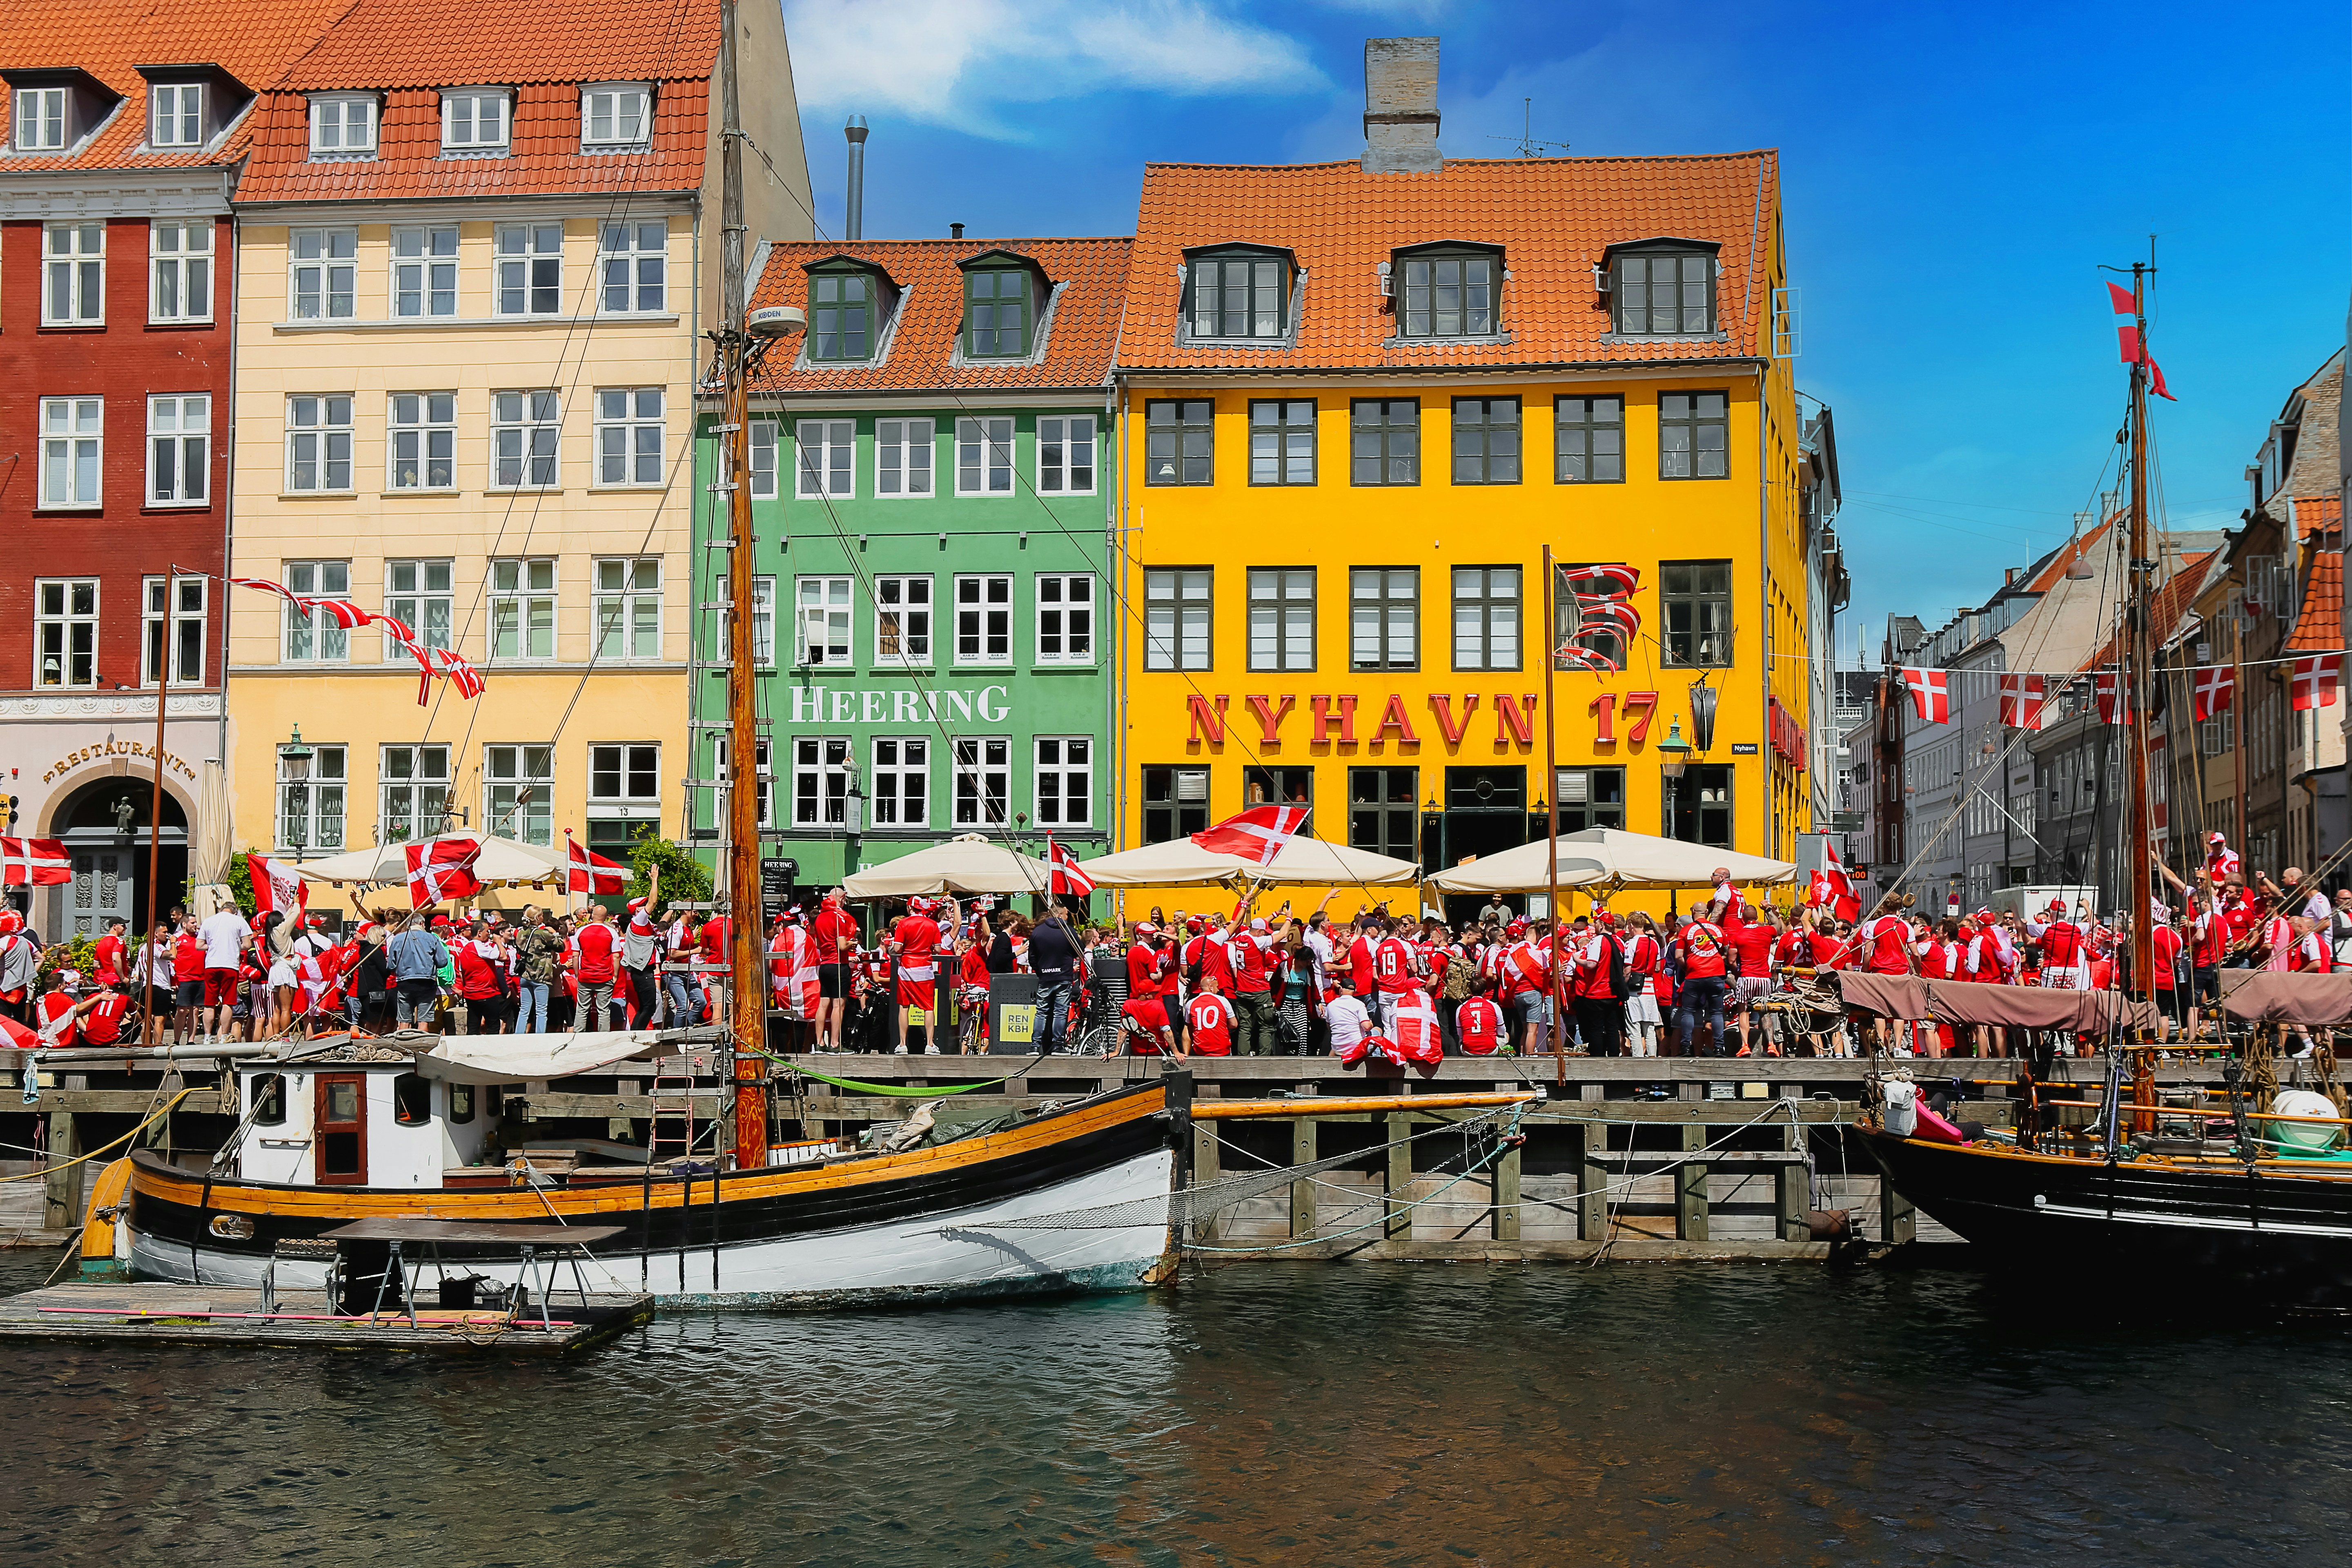 Dänische Fußballfans feiern vor bunten Häusern im Hafen Nyhavn in Kopenhagen